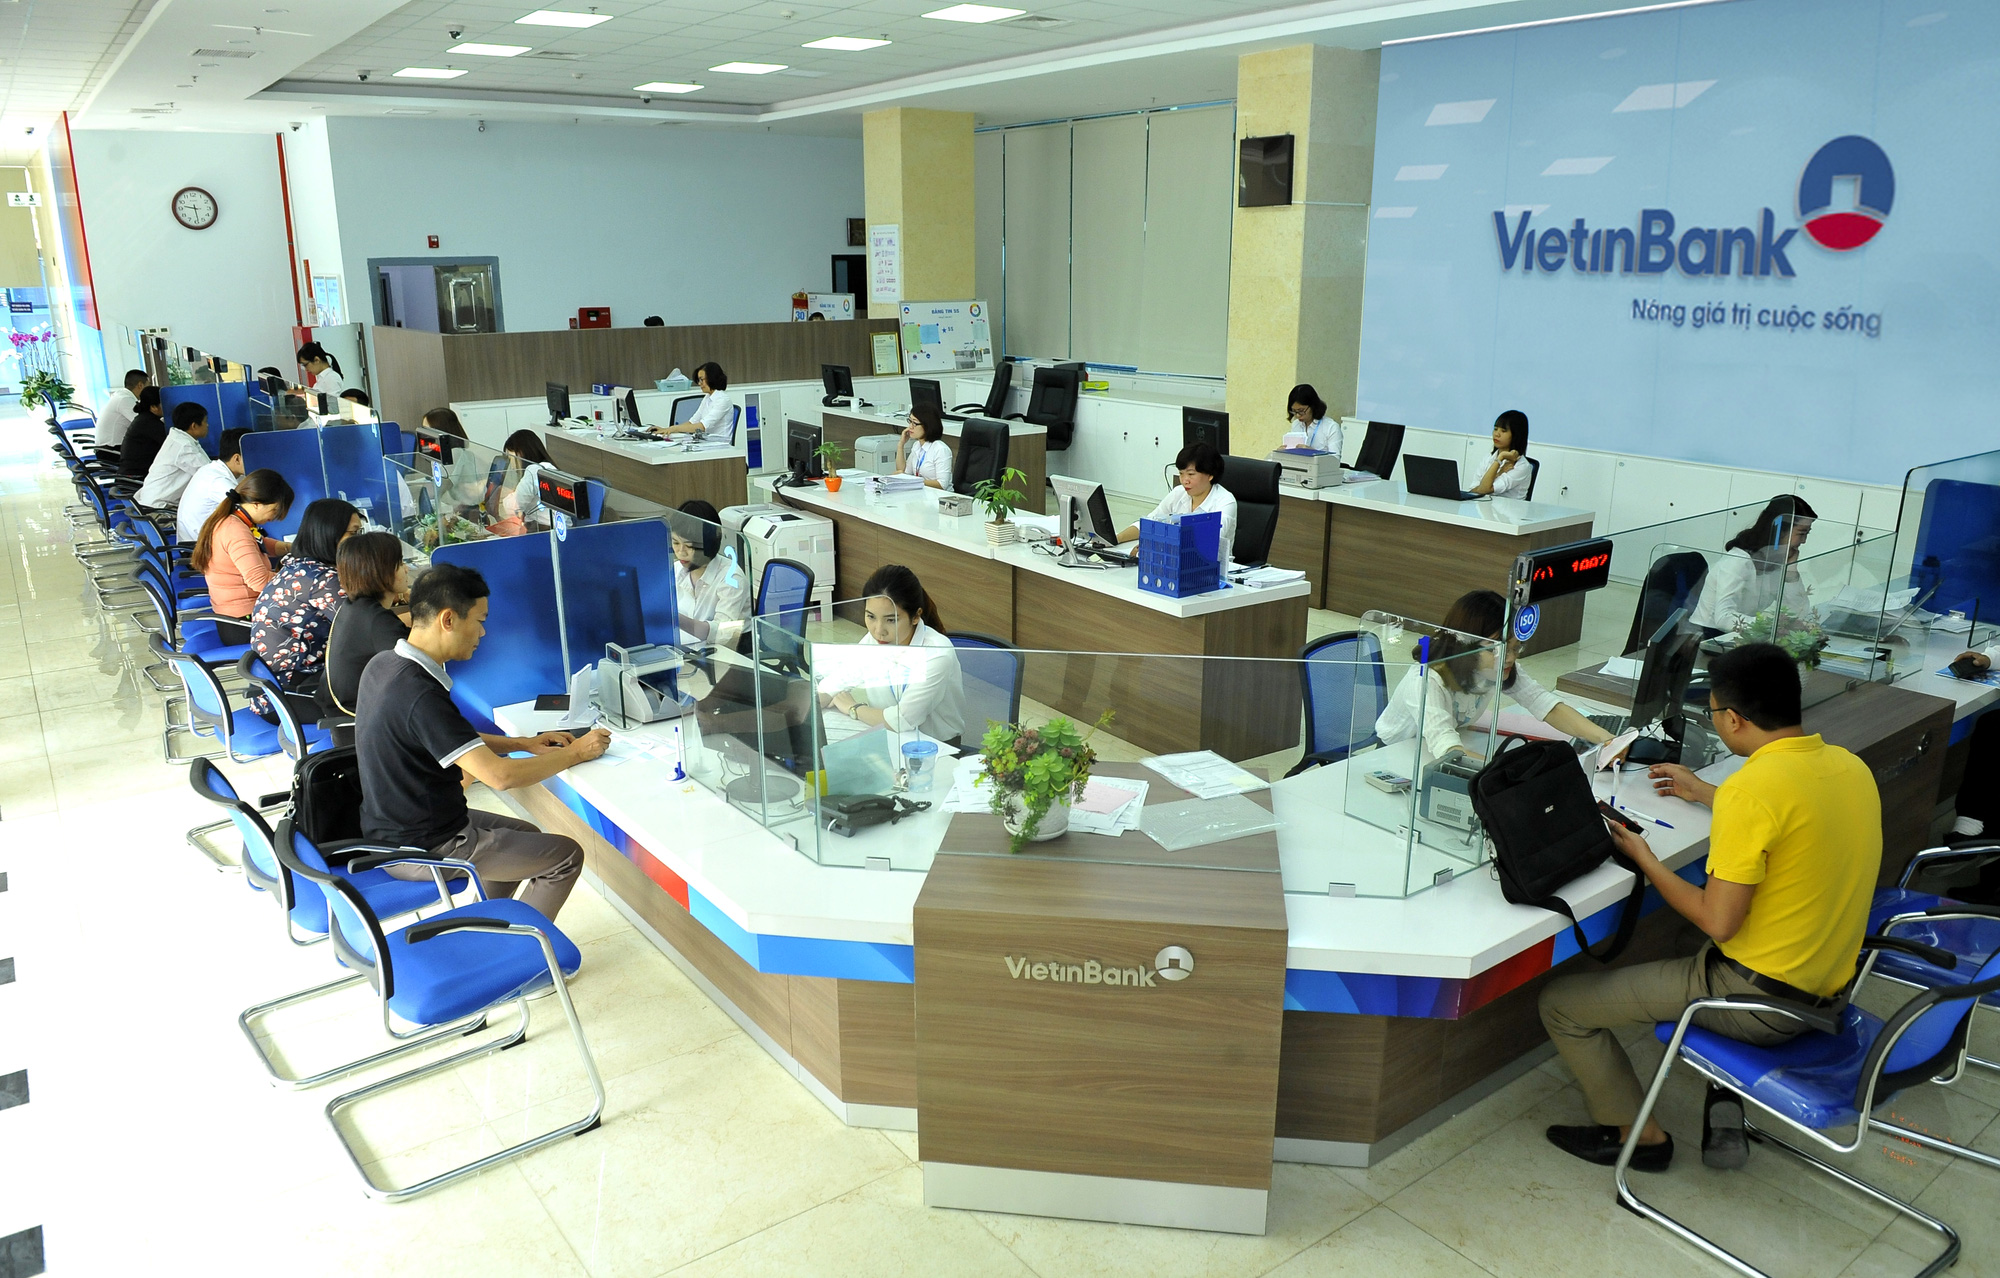 VietinBank tuyển dụng chi nhánh đợt 1 năm 2020 - Ảnh 1.